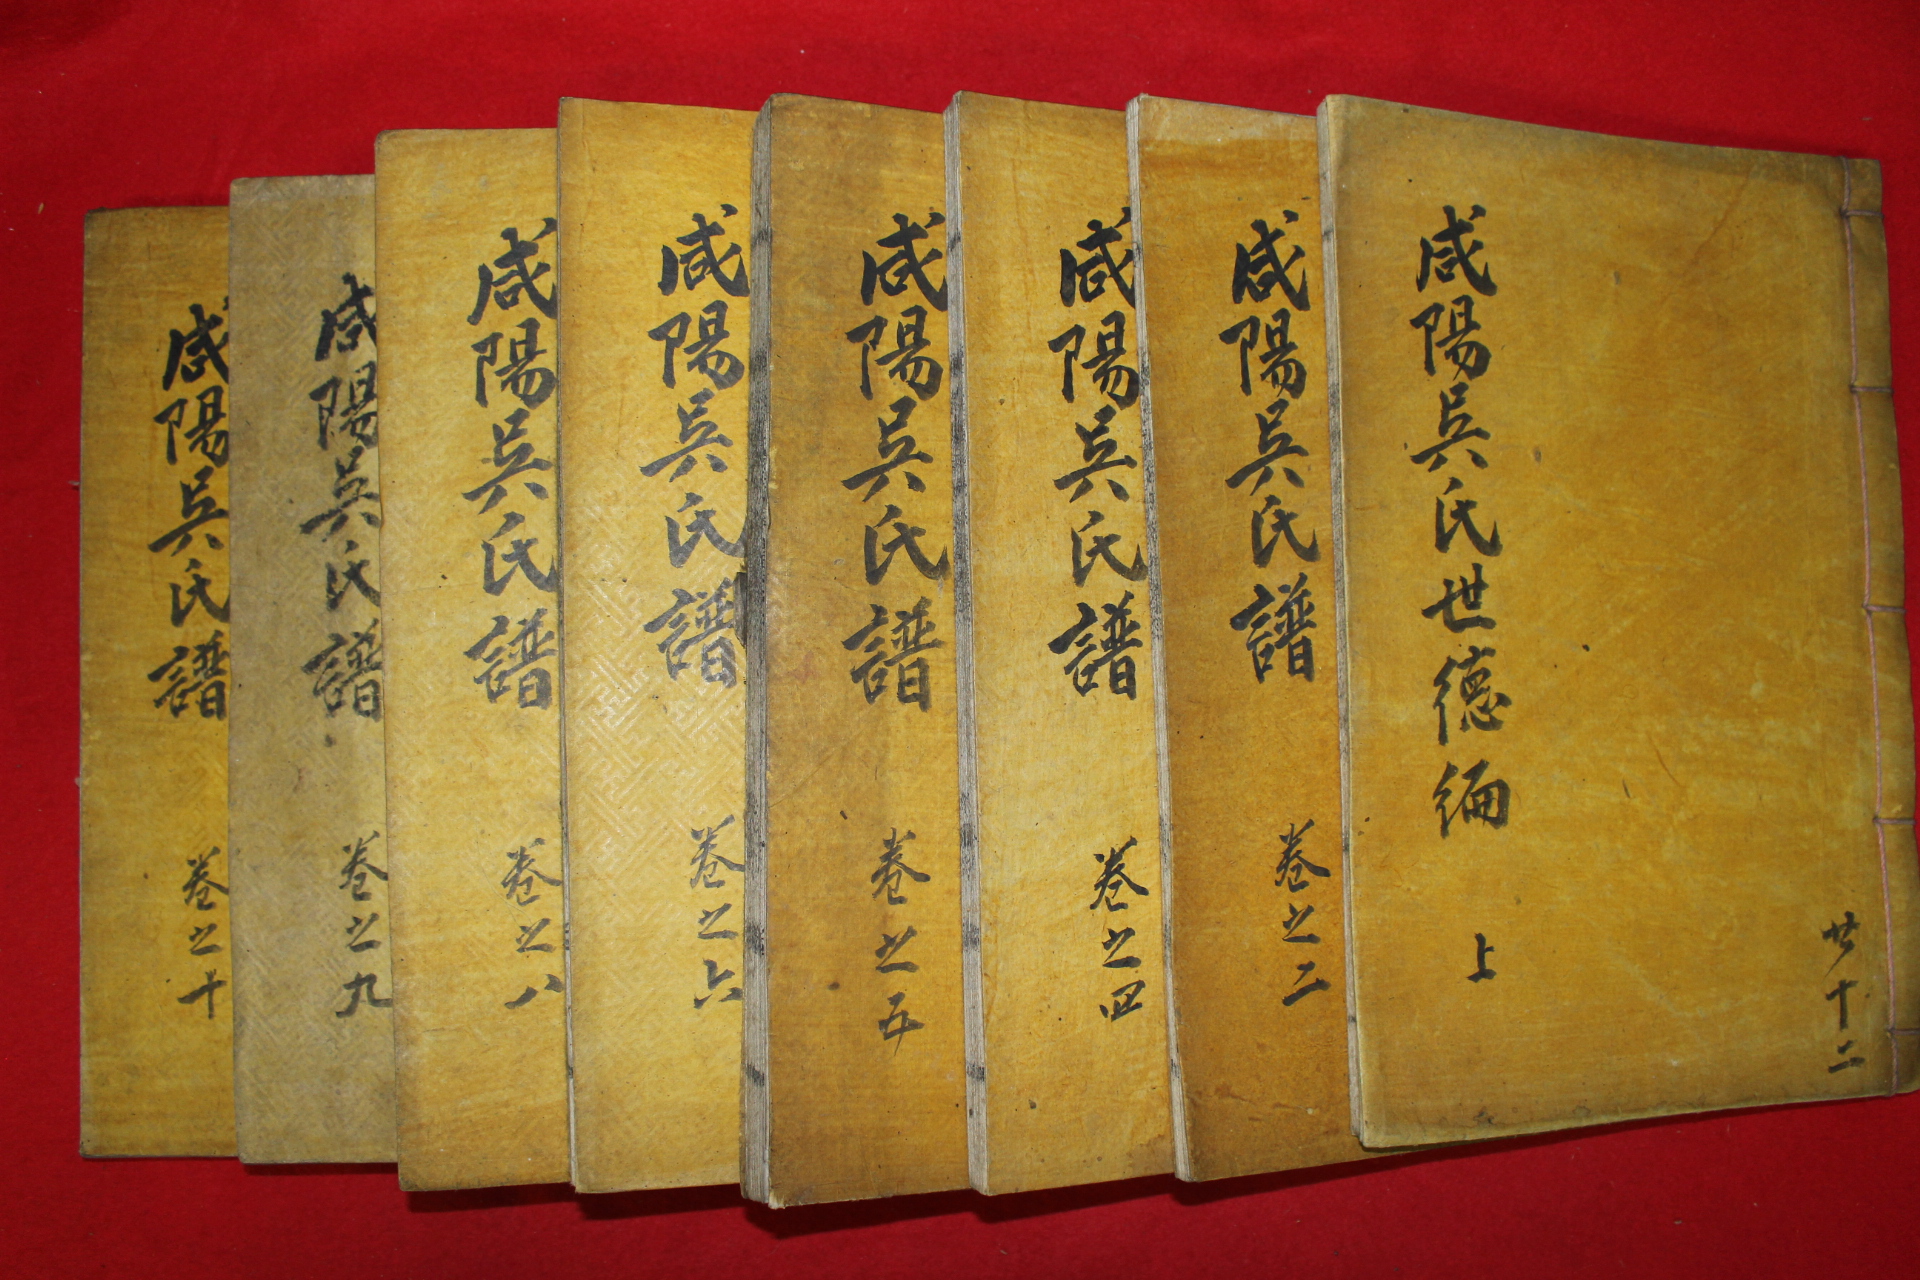 목활자본 함양오씨족보(咸陽吳氏族譜) 8책